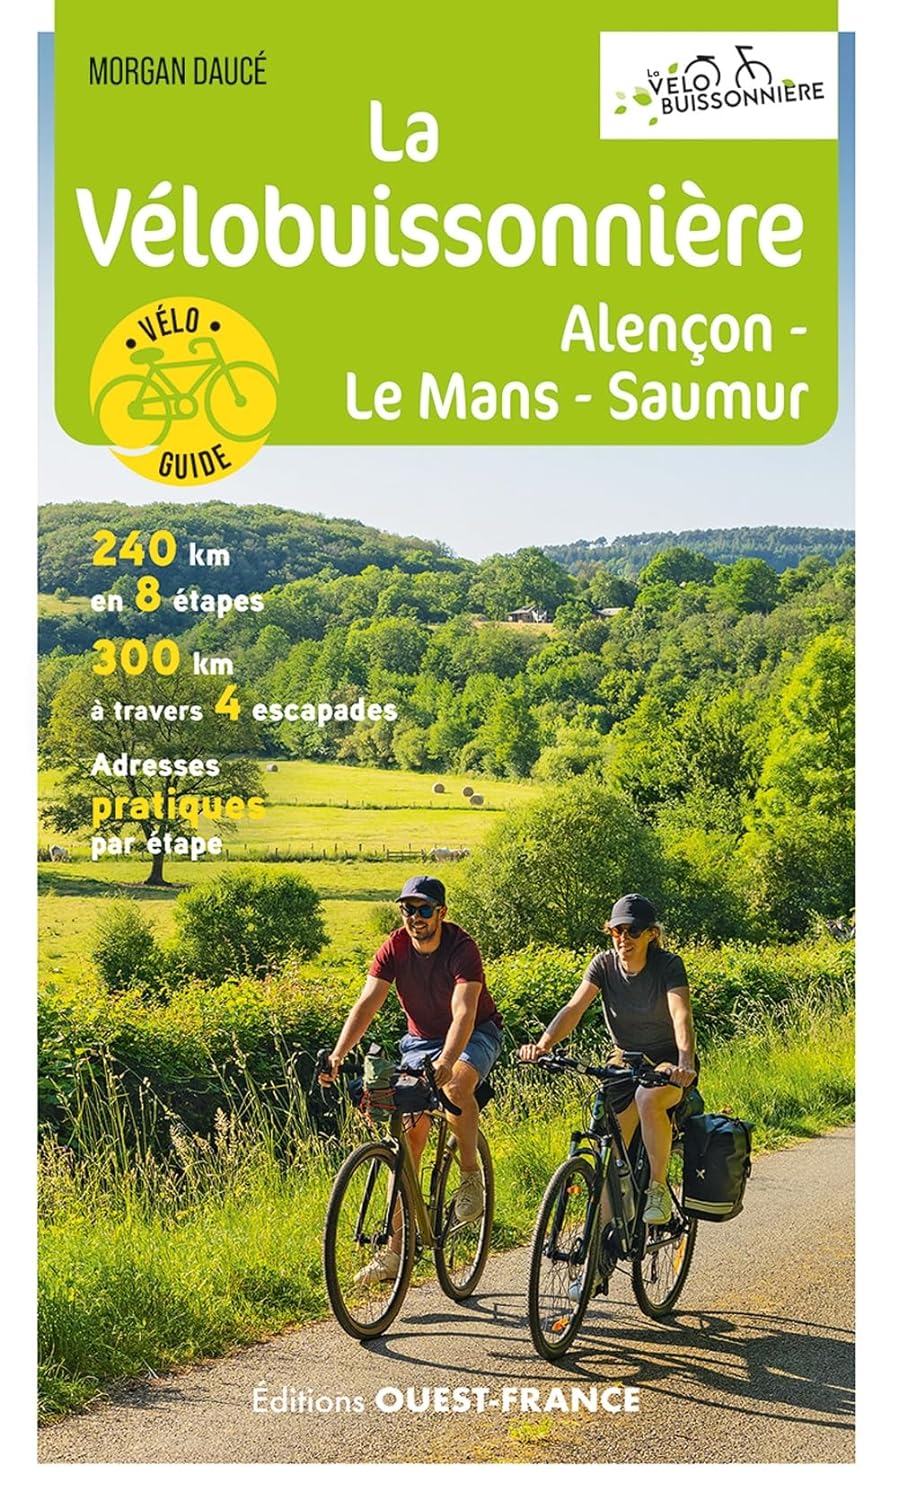 Cycling guide - La Vélobuissonnière - Alençon-Le Mans-Saumur | West France